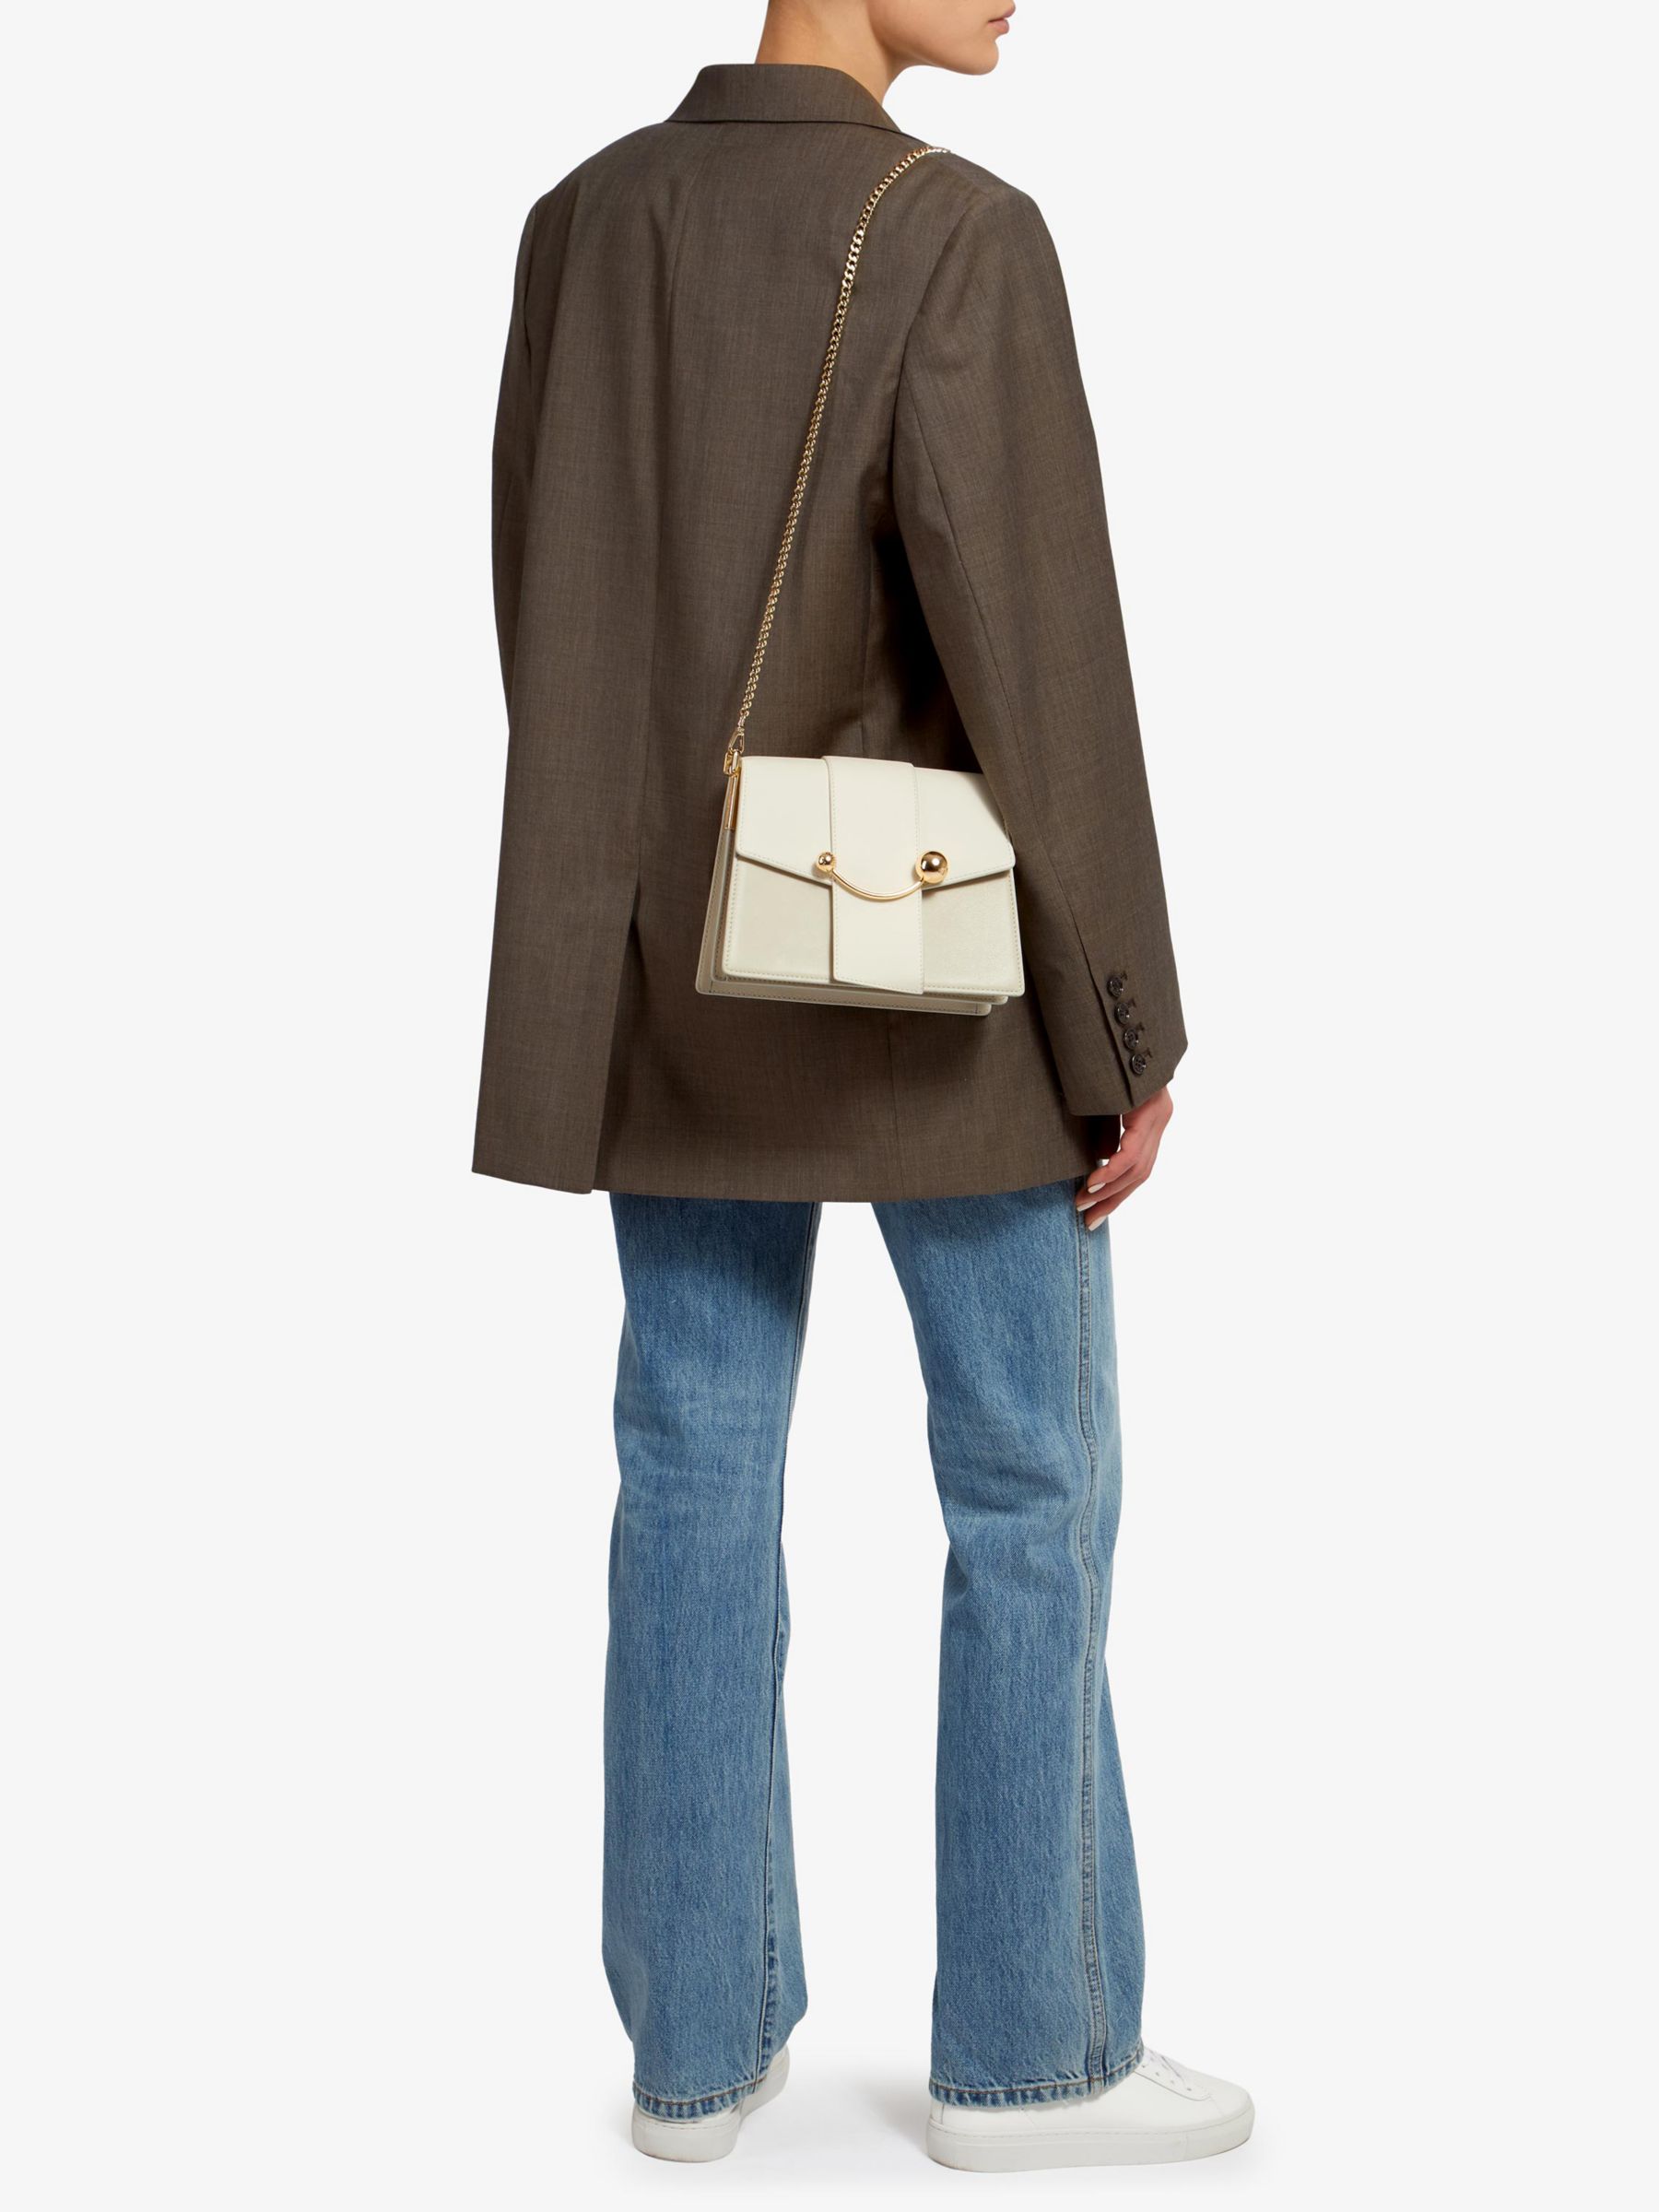 Strathberry - Crescent Shoulder - Leather Shoulder Bag - White / Cream